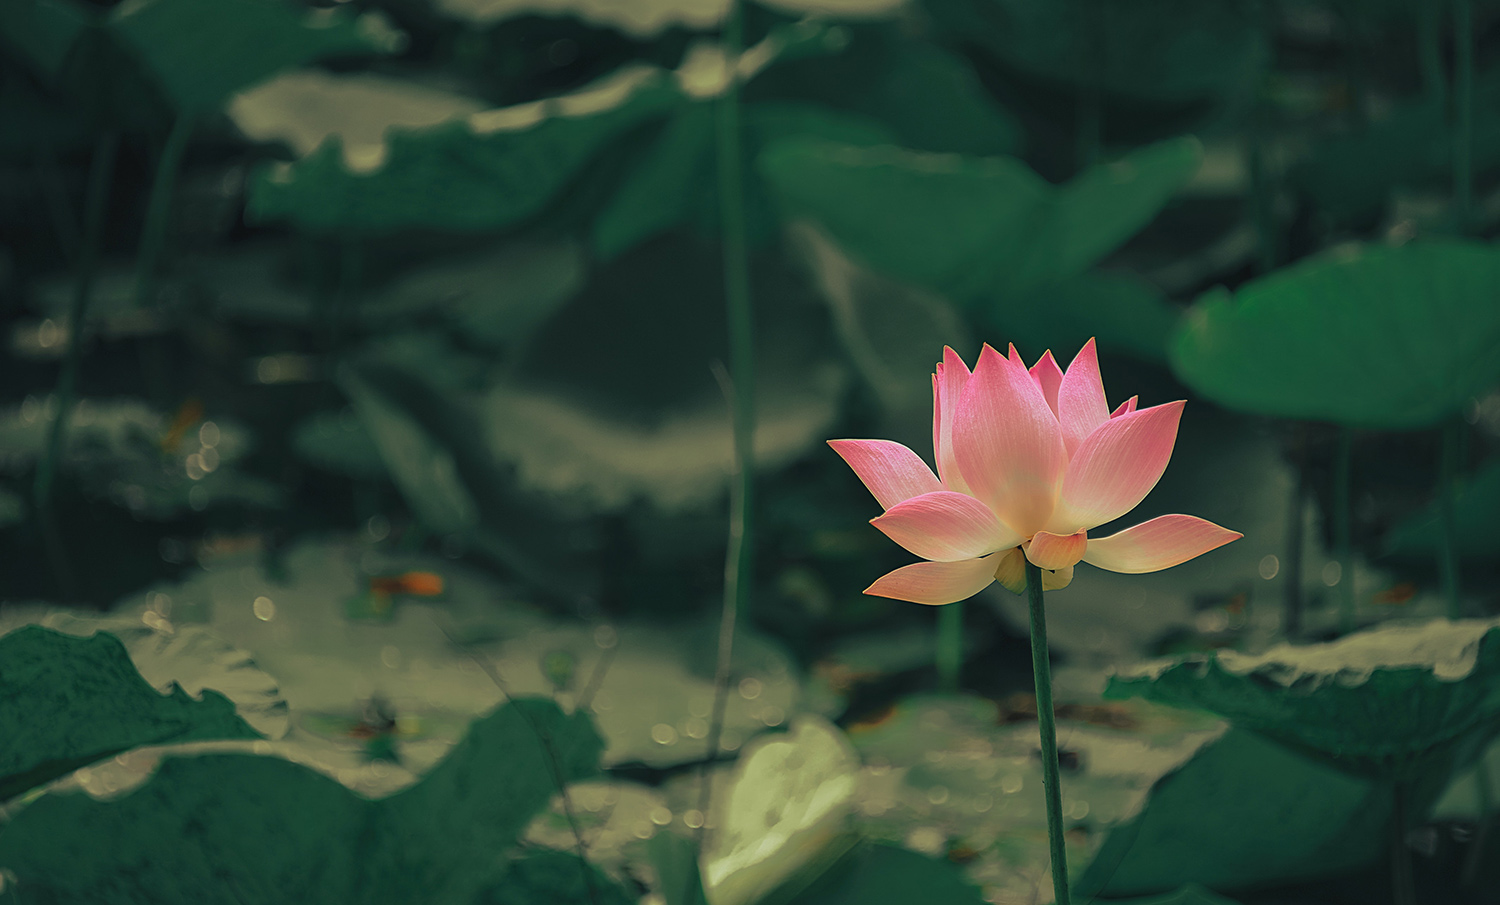 Lotus Flower representing self care